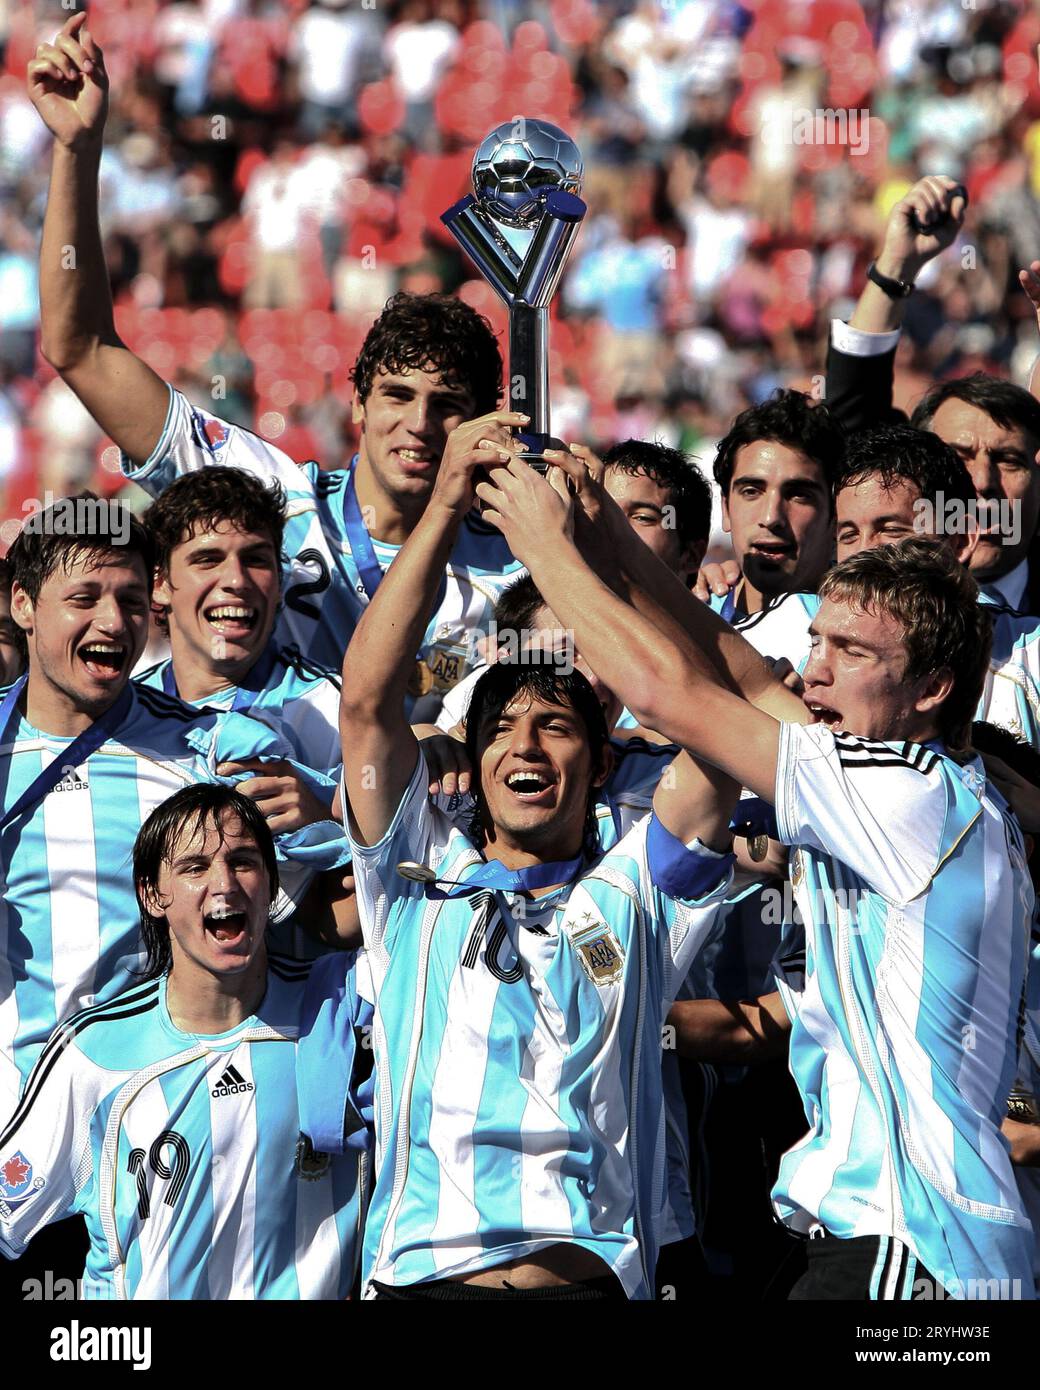 Sergio Aguero et les joueurs argentins célèbrent leur victoire en coupe du monde U-20. L'Argentine est venue de derrière pour battre la République tchèque 2-1 en finale de la coupe du monde U-20 de la FIFA dans le stade national de soccer à Toronto, au Canada, le 22 2007 juillet. Banque D'Images